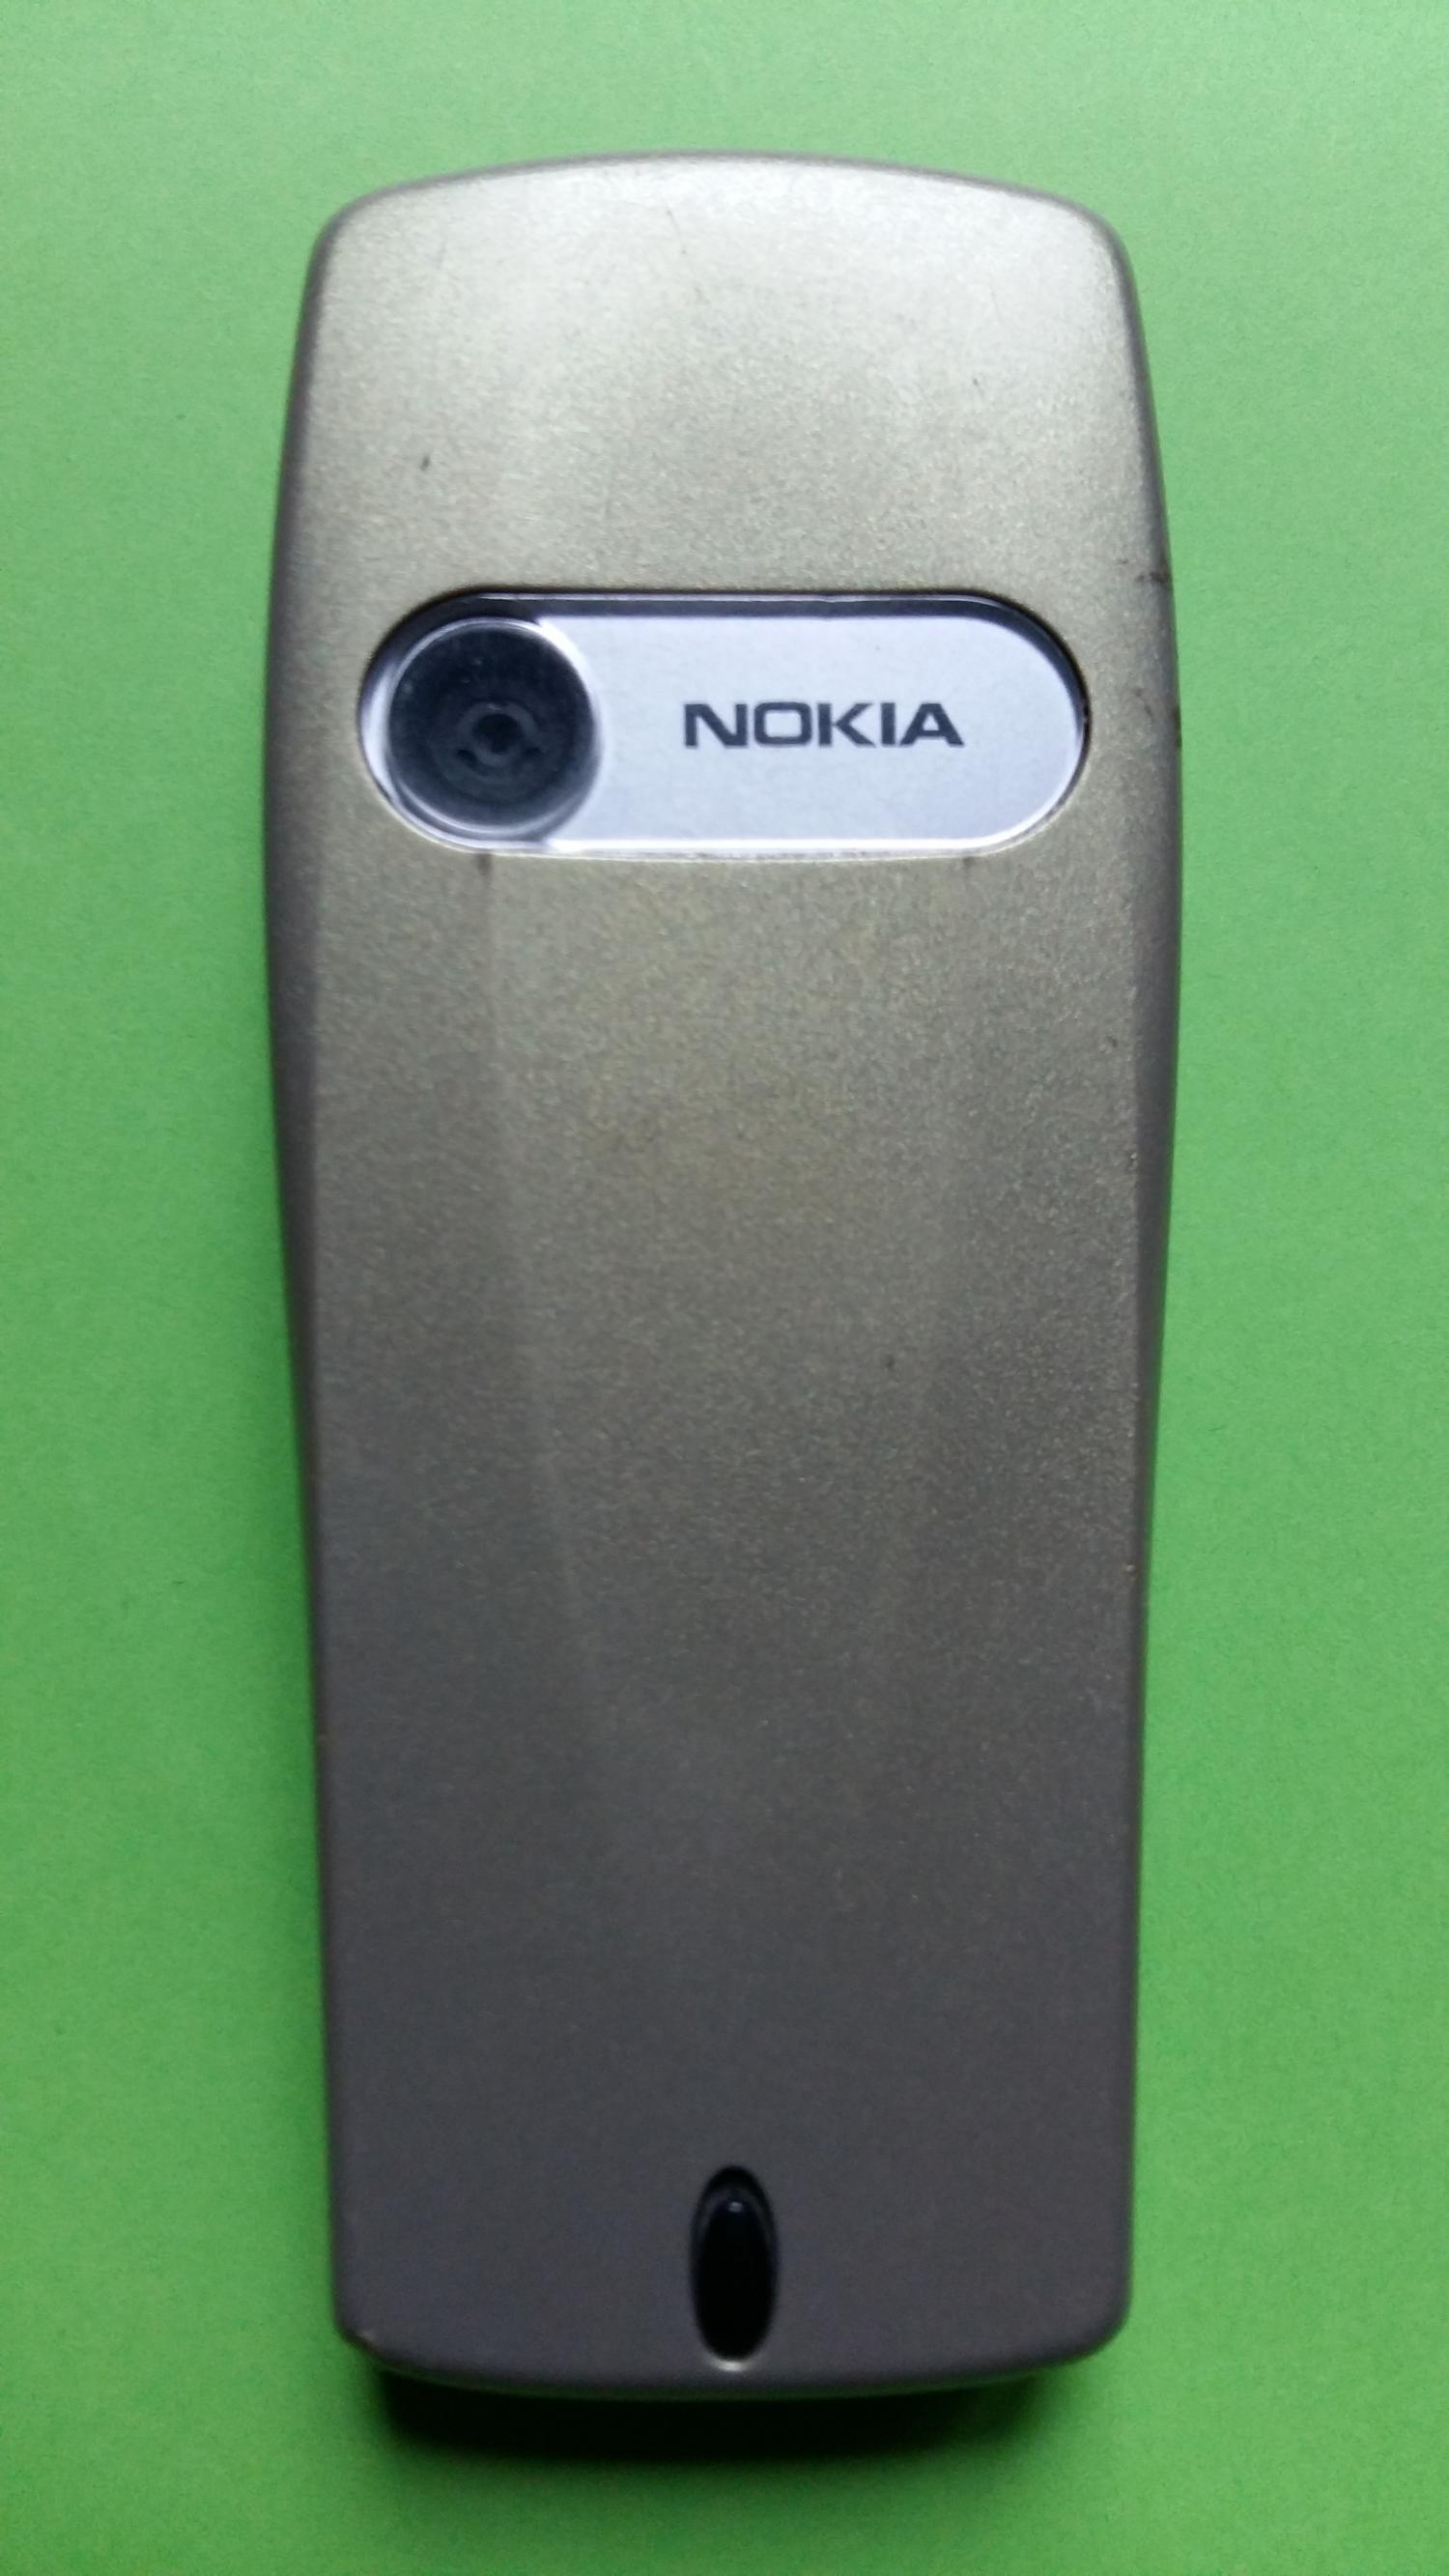 image-7336783-Nokia 6610i (4)2.jpg